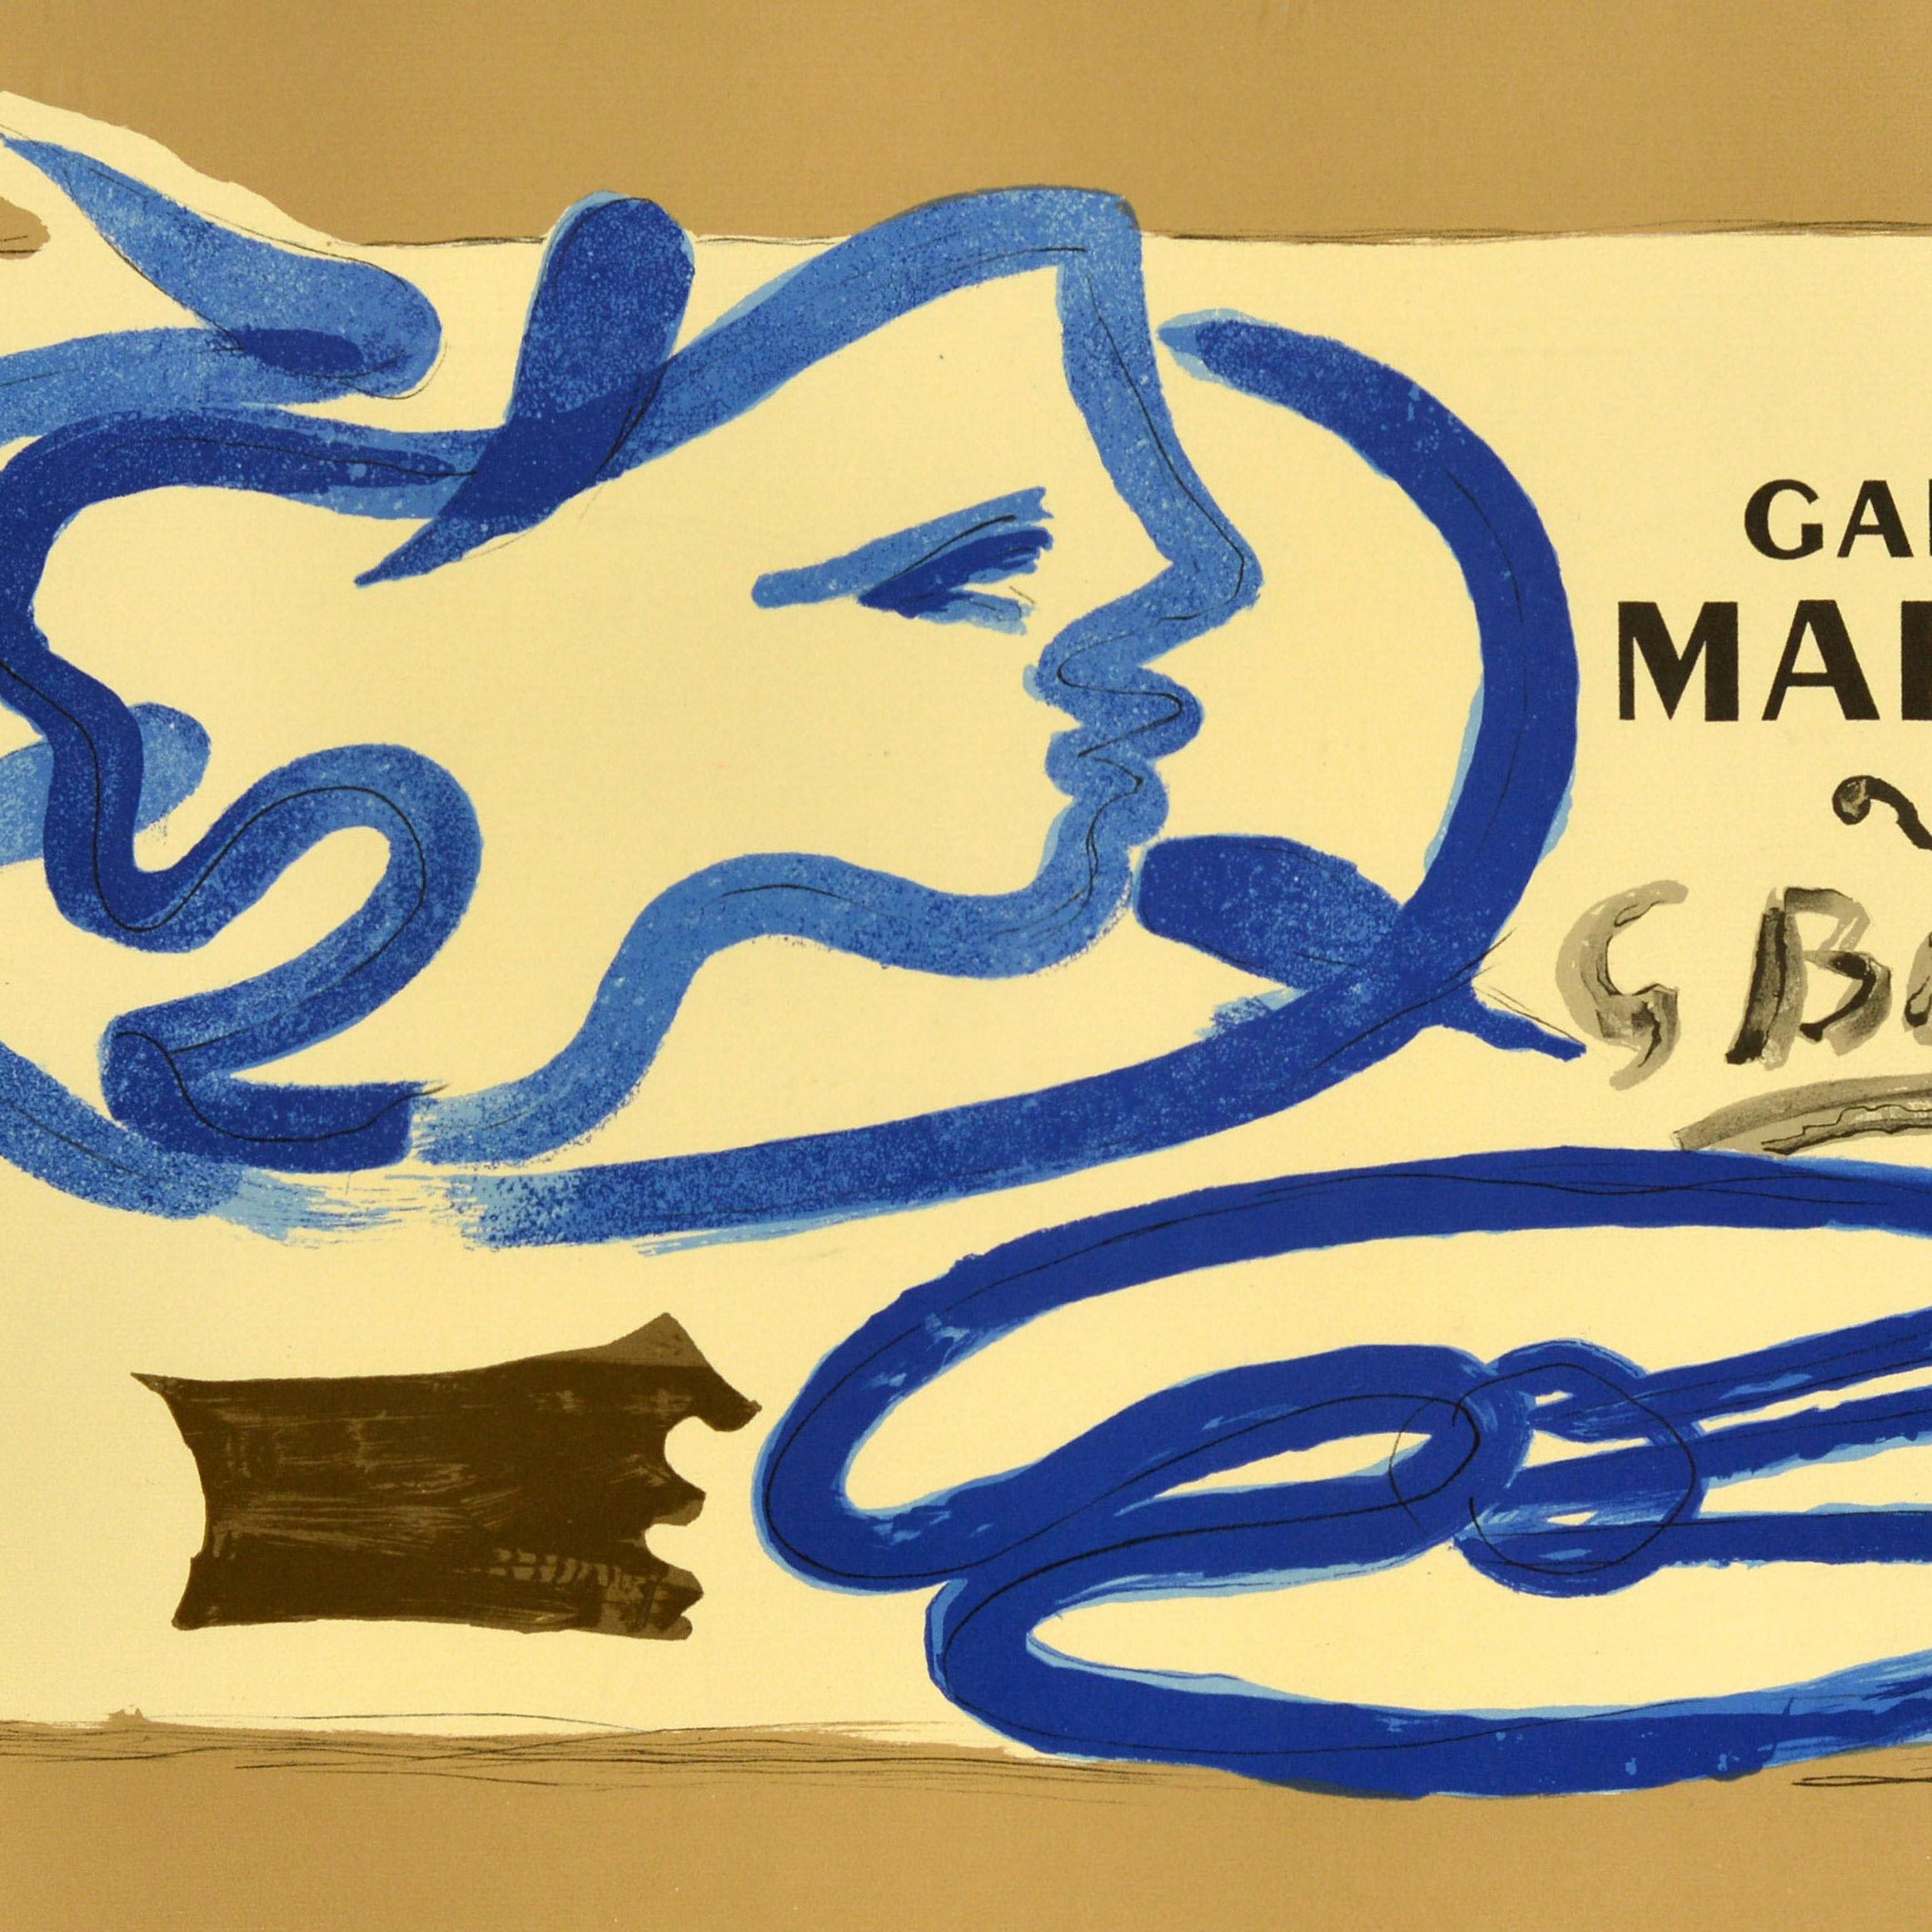 Original-Werbeplakat für eine Ausstellung von Werken des französischen Künstlers Georges Braque (1882-1963) in der Galerie Maeght mit einem abstrakten Entwurf mit dem Titel Profil a la Palette / Palette Profile, der die Silhouette einer Person in